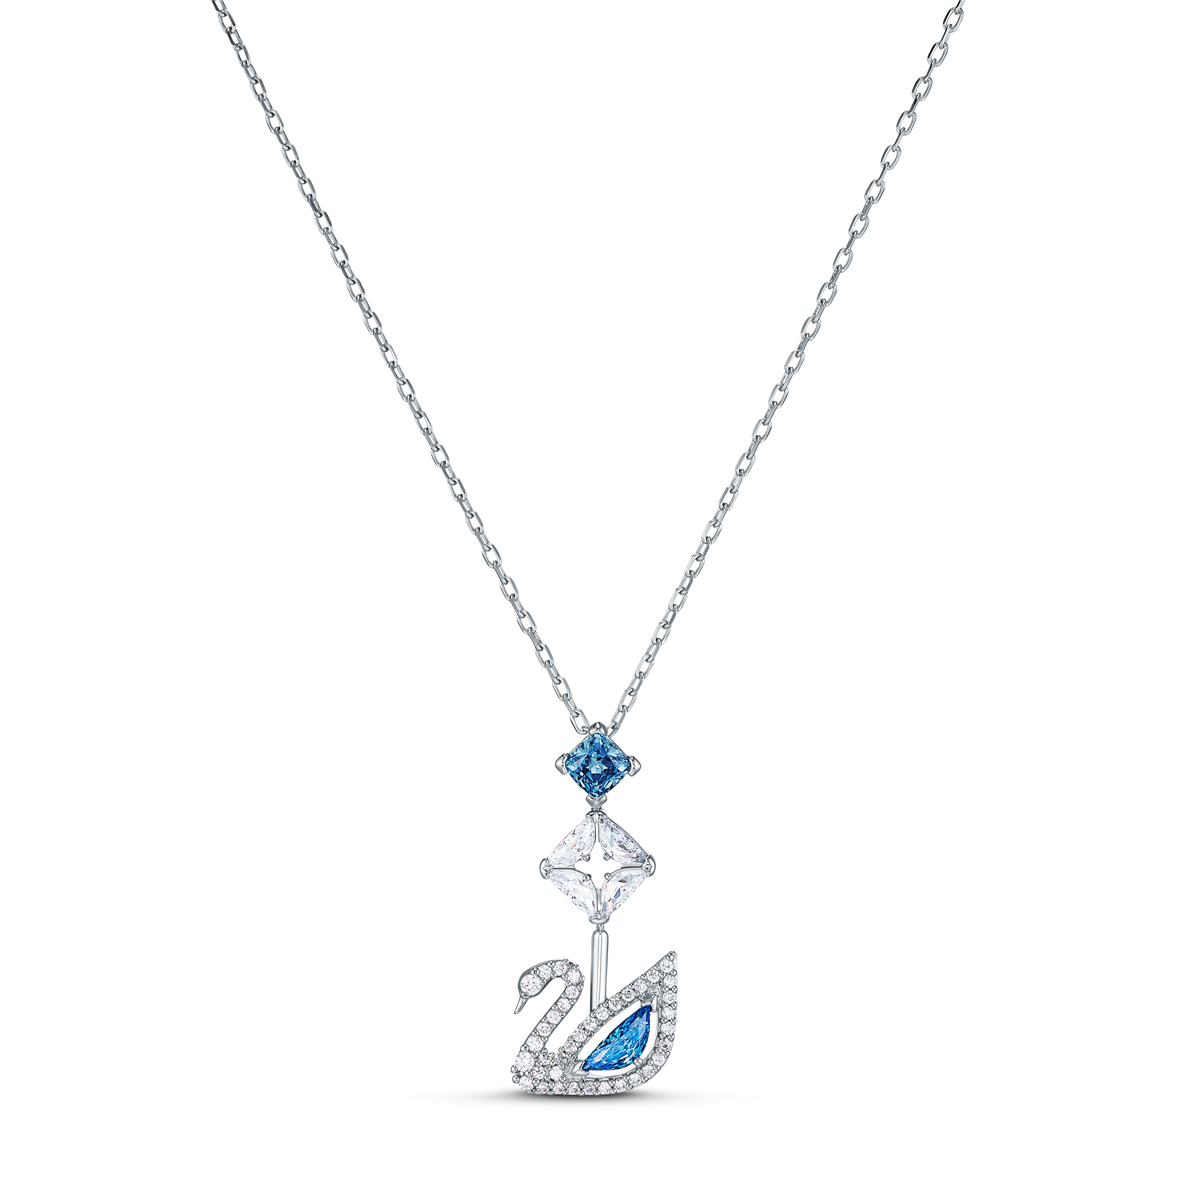 Swarovski Necklace Dazzling Swan Necklace Y Crystal Fuschia Rhodium Silver